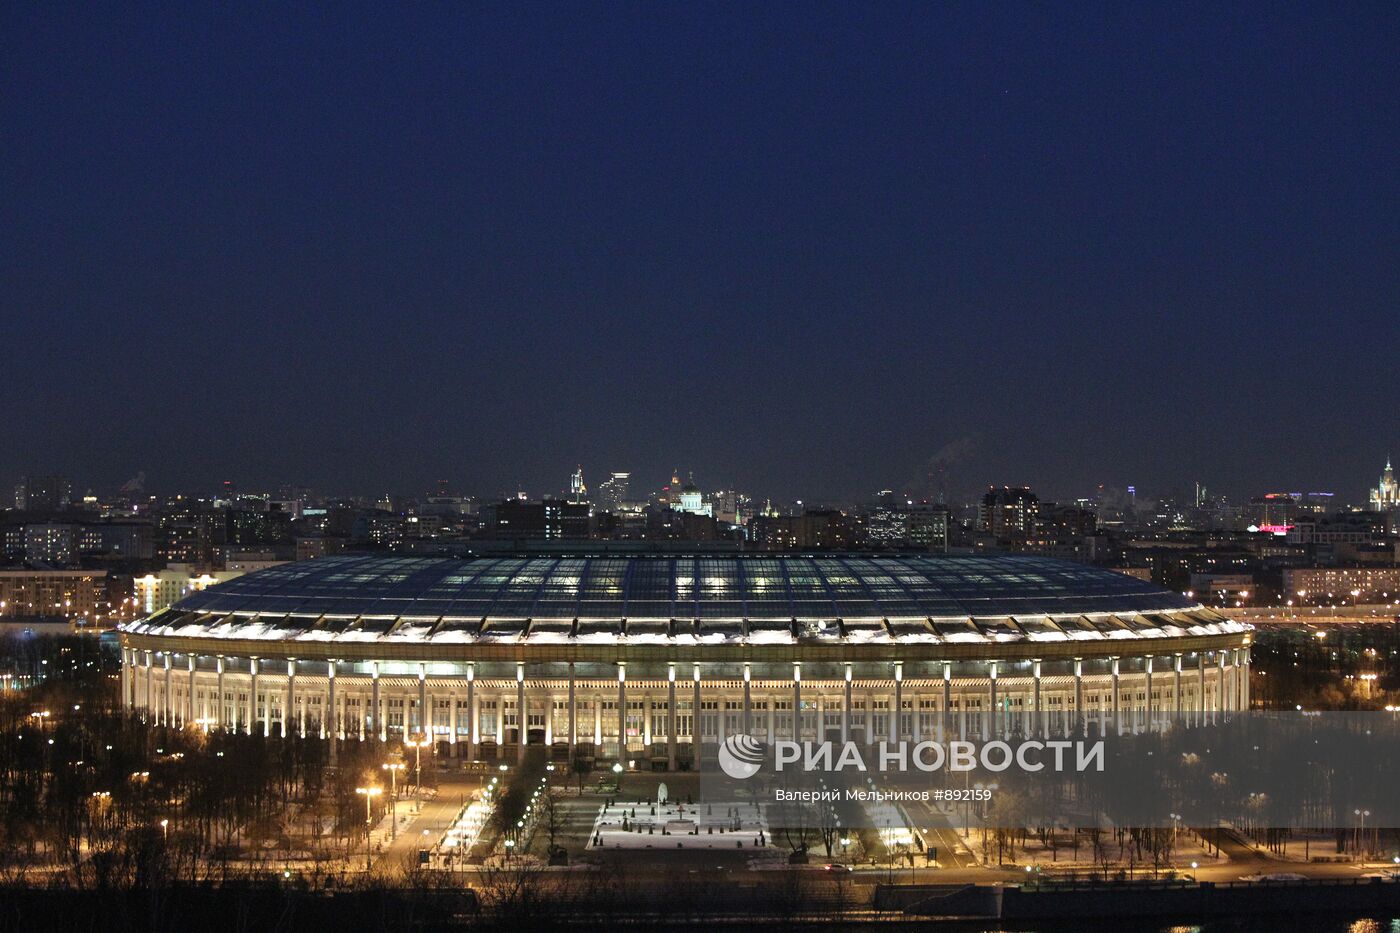 Большая спортивная арена "Лужники" с подсветкой